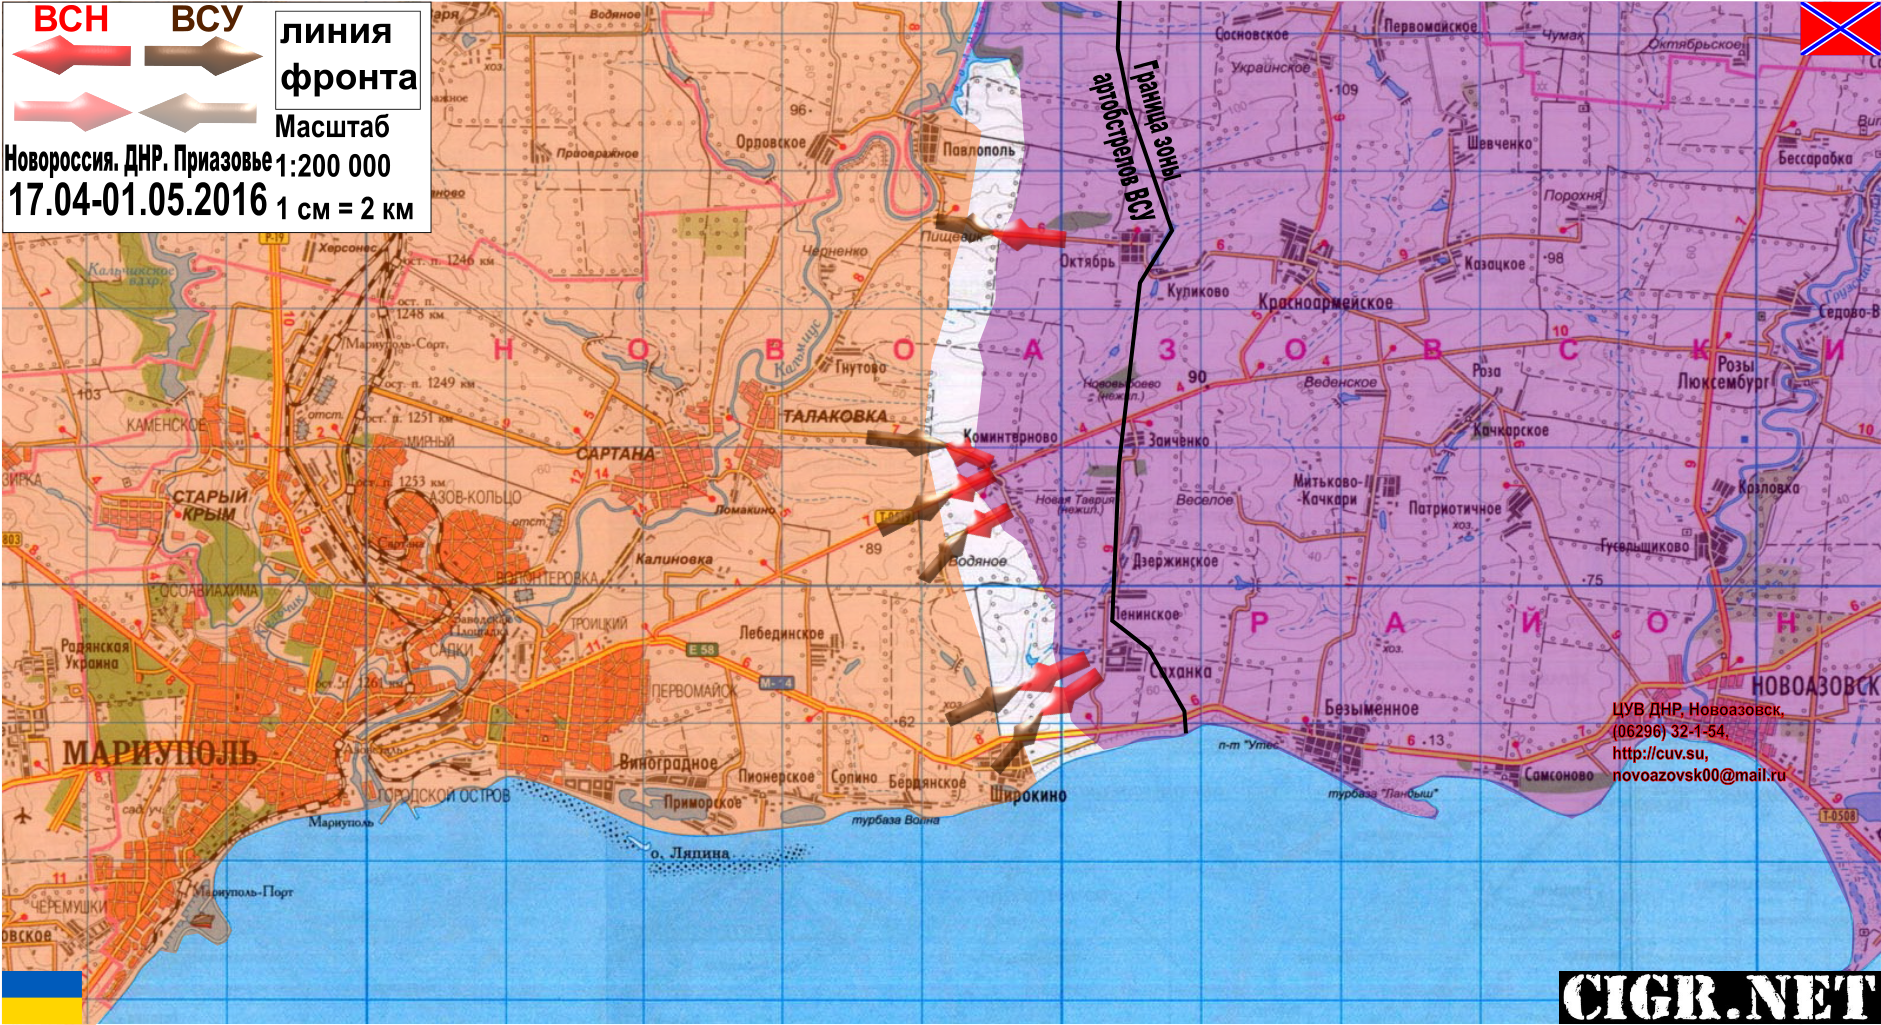 Мариуполь на карте. Мариуполь на карте ДНР. Карта фронта ДНР. Карта Мариуполя с границами районов.